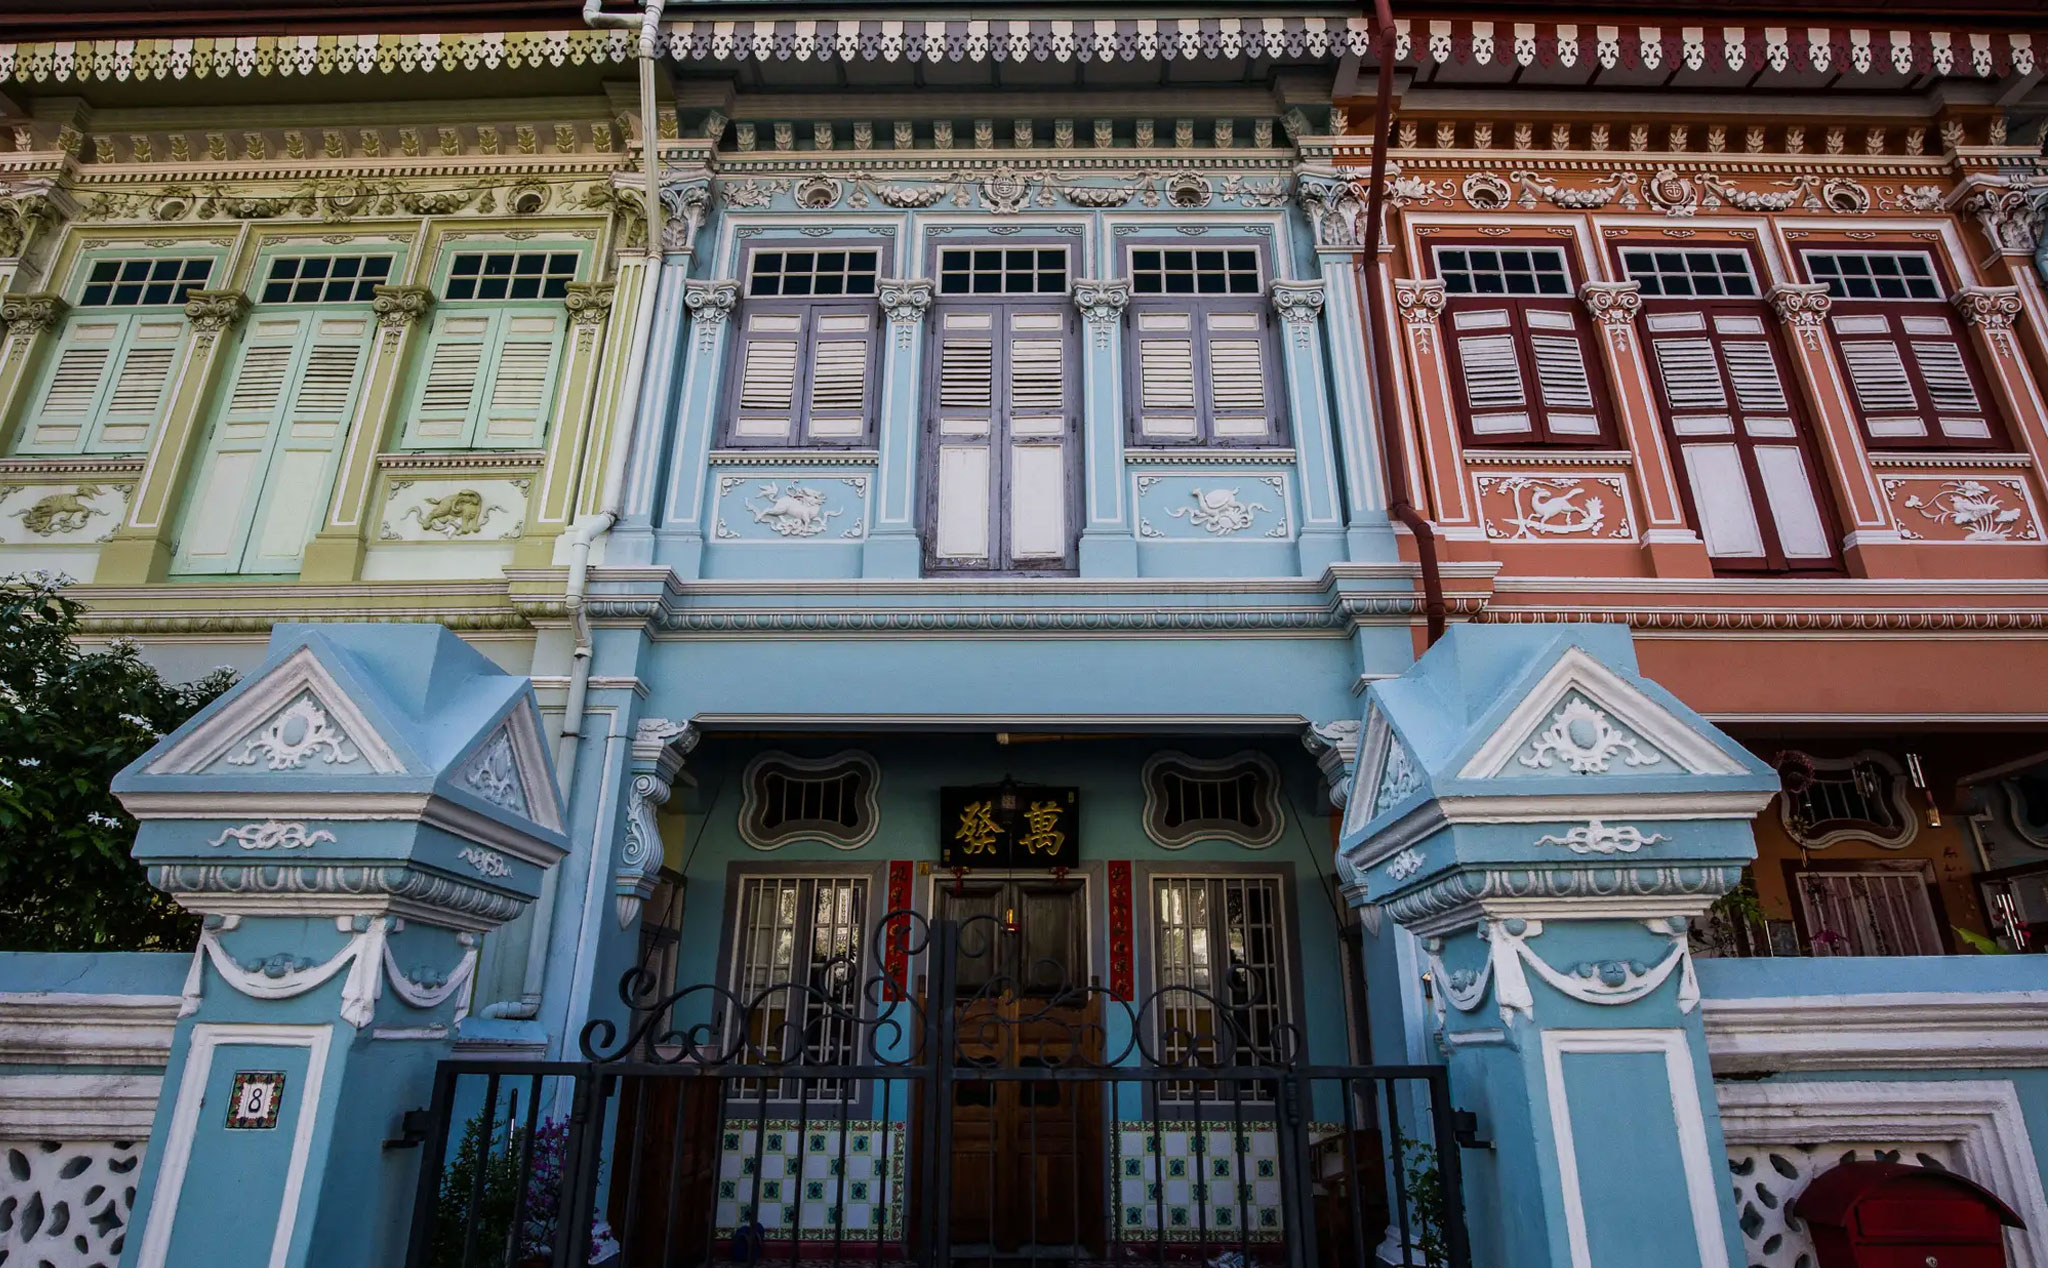 Singapore khoác lên diện mạo mới cho những ngôi nhà cổ trăm năm tuổi đã xuống cấp như thế nào?